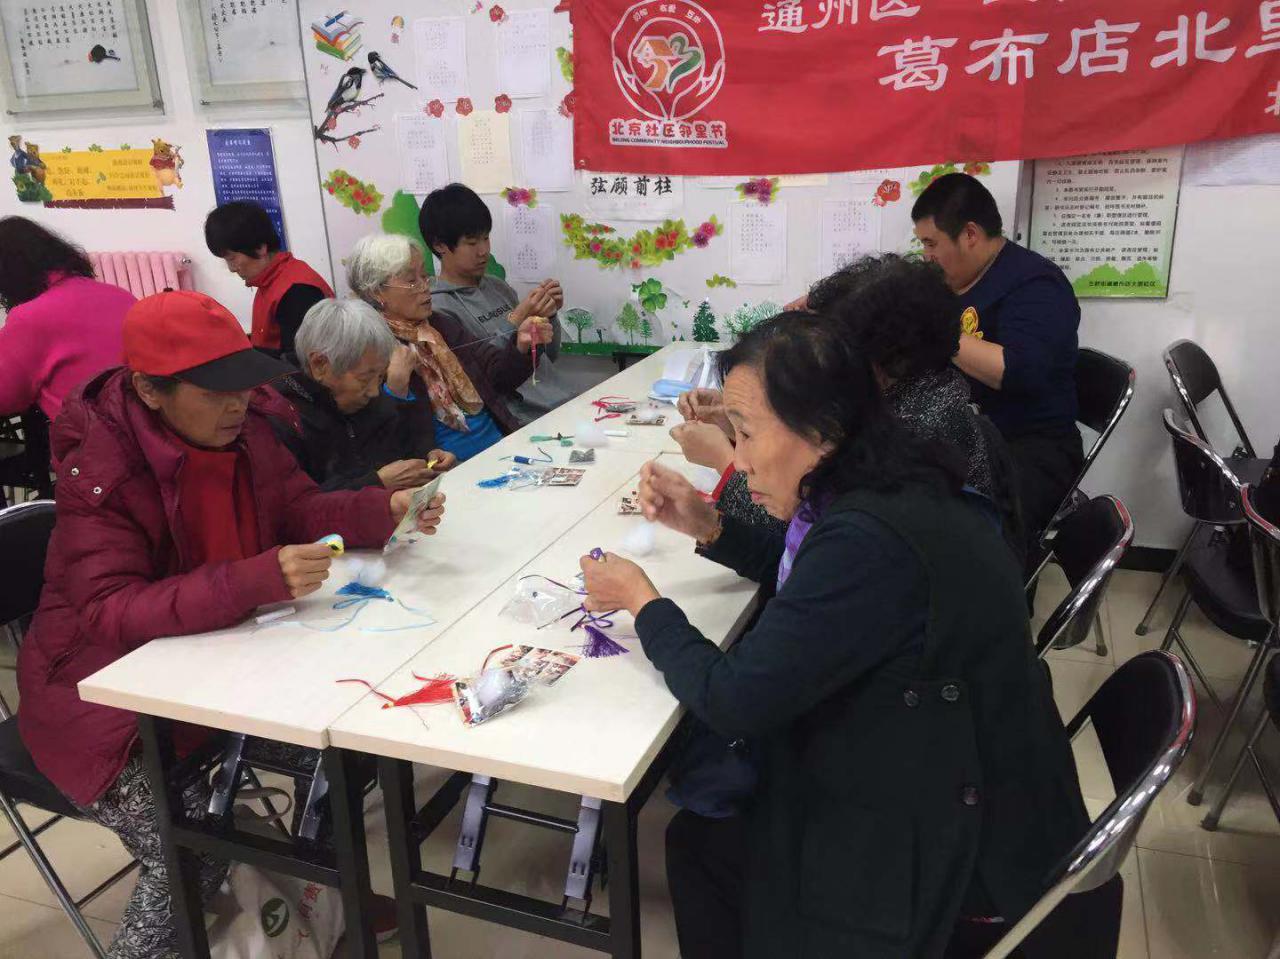 北京市通州区葛布店北里社区邻里节举办“DIY手工香包”活动